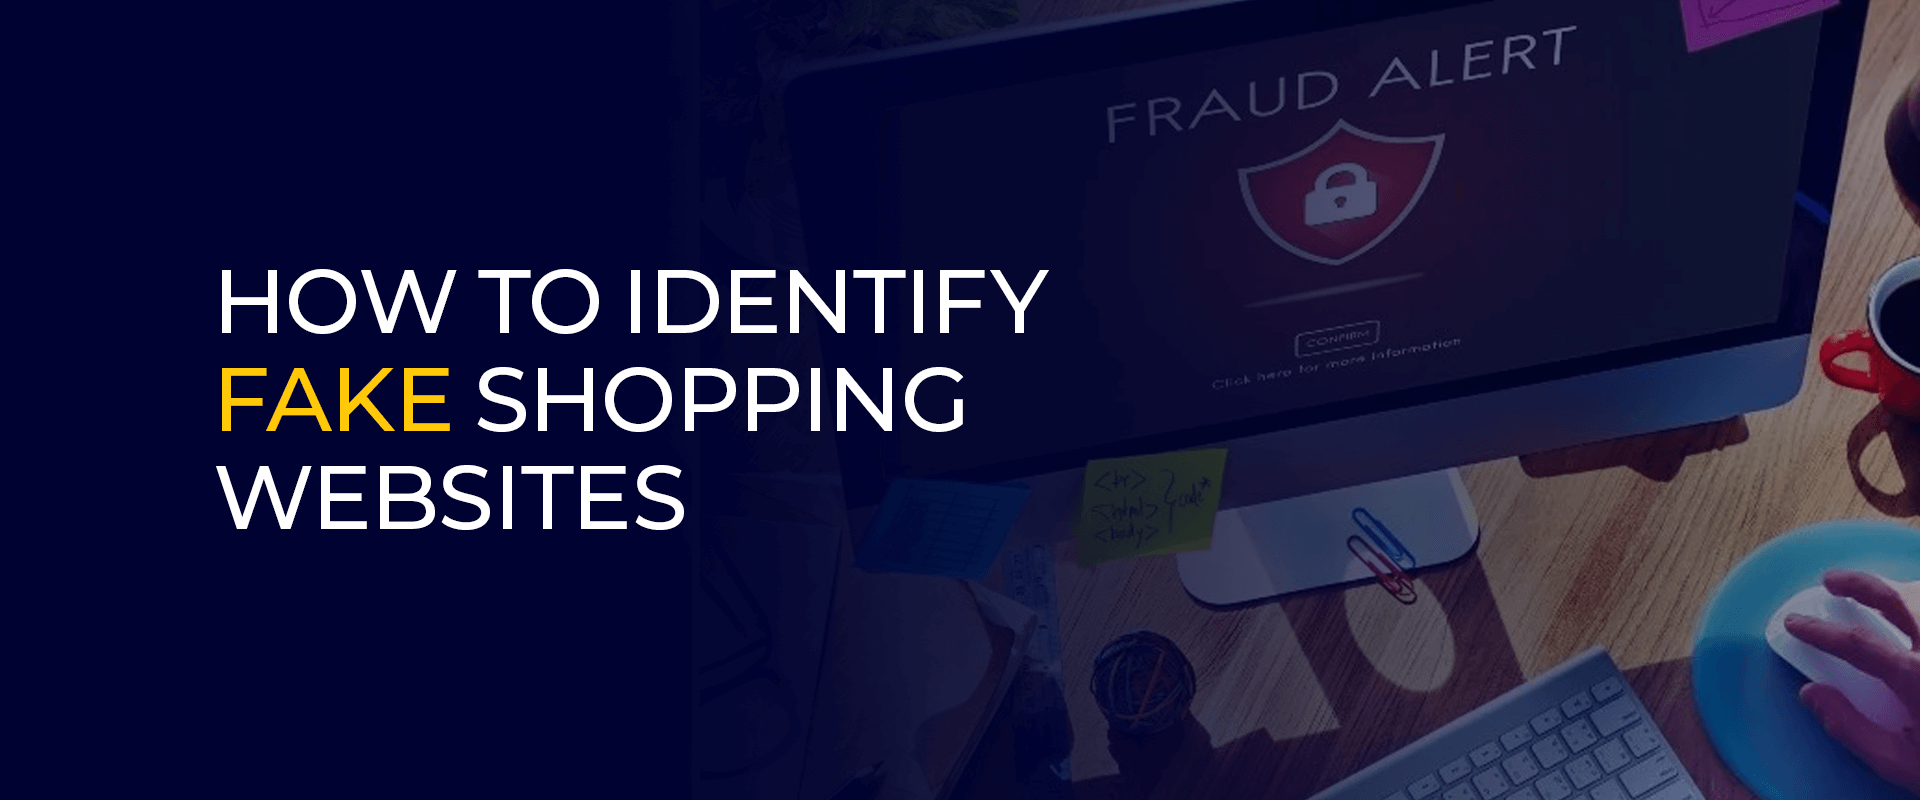 Come identificare i siti di shopping falsi